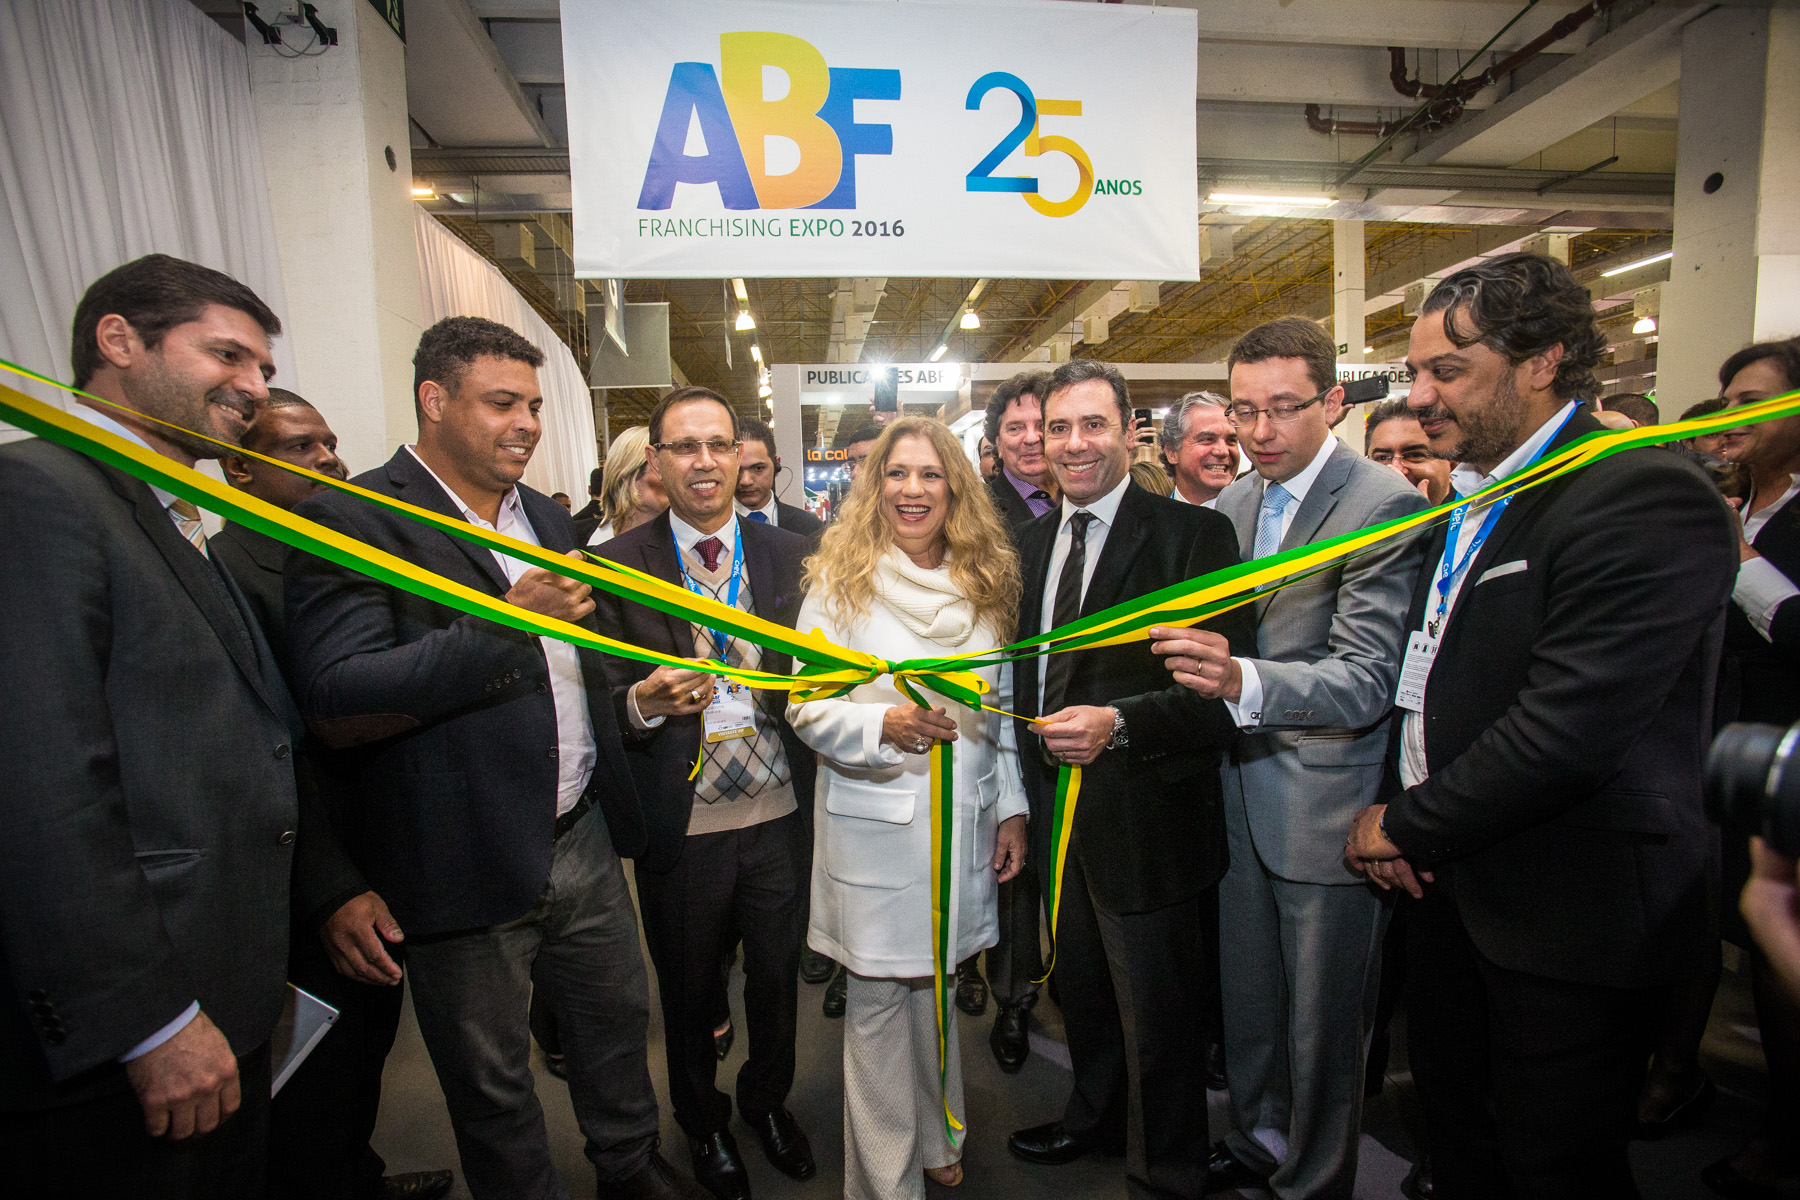 Começa a 25ª ABF Franchising Expo